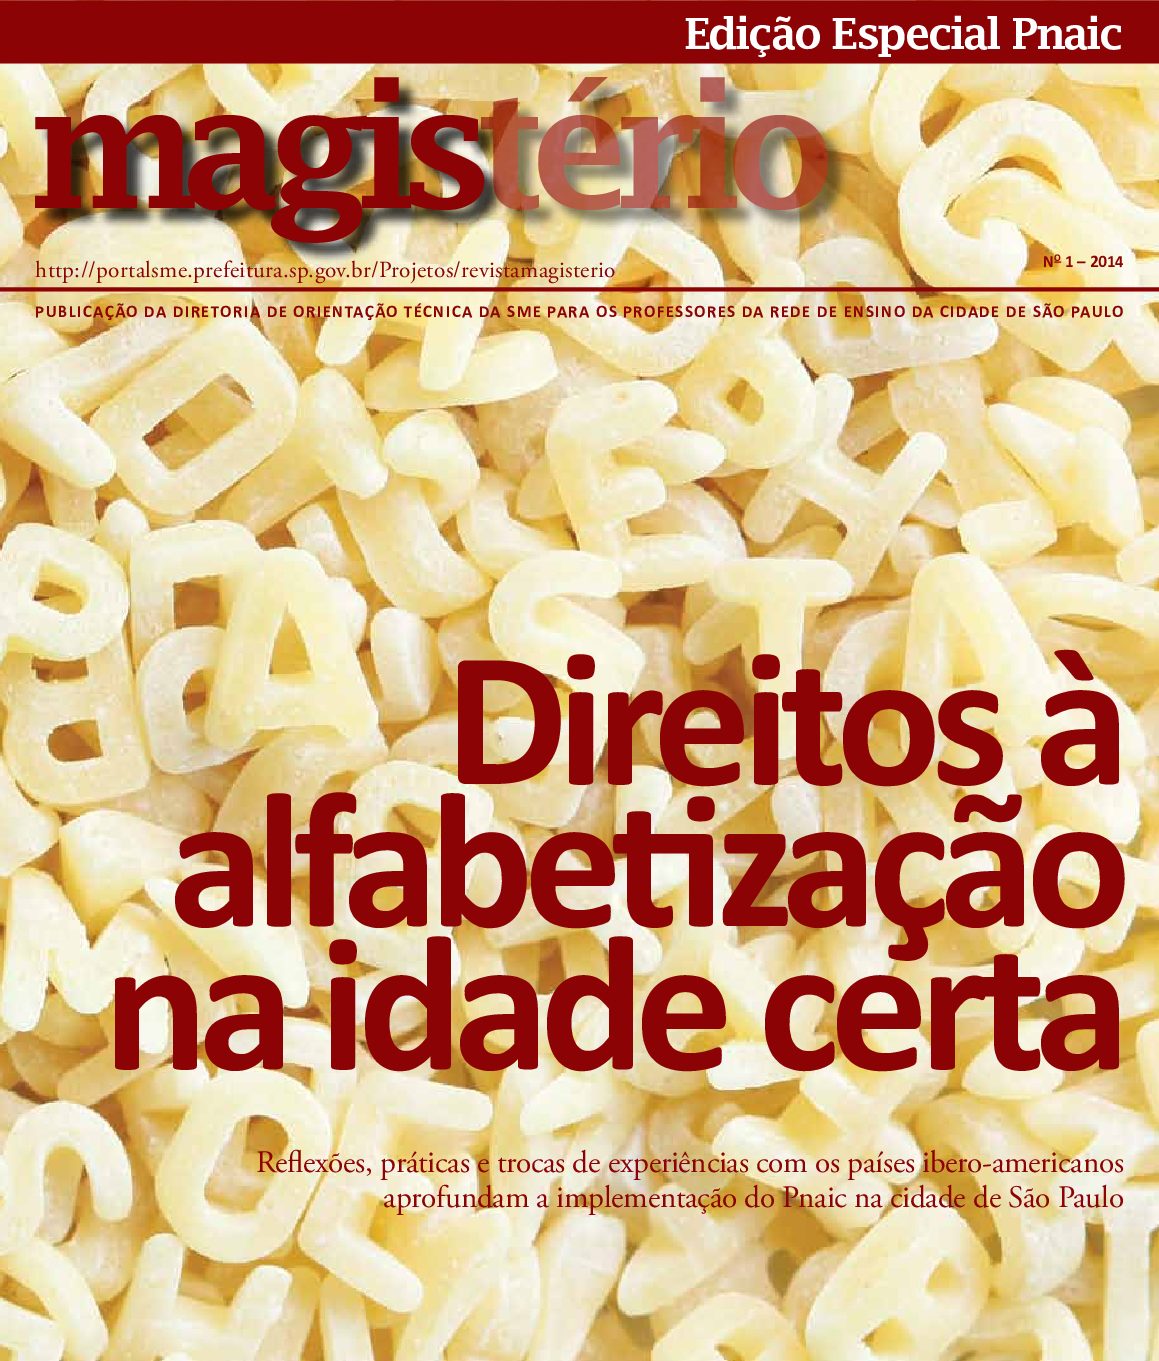 Publicação periódica da Secretaria Municipal de Educação de São Paulo. Edição Especial Pnaic.